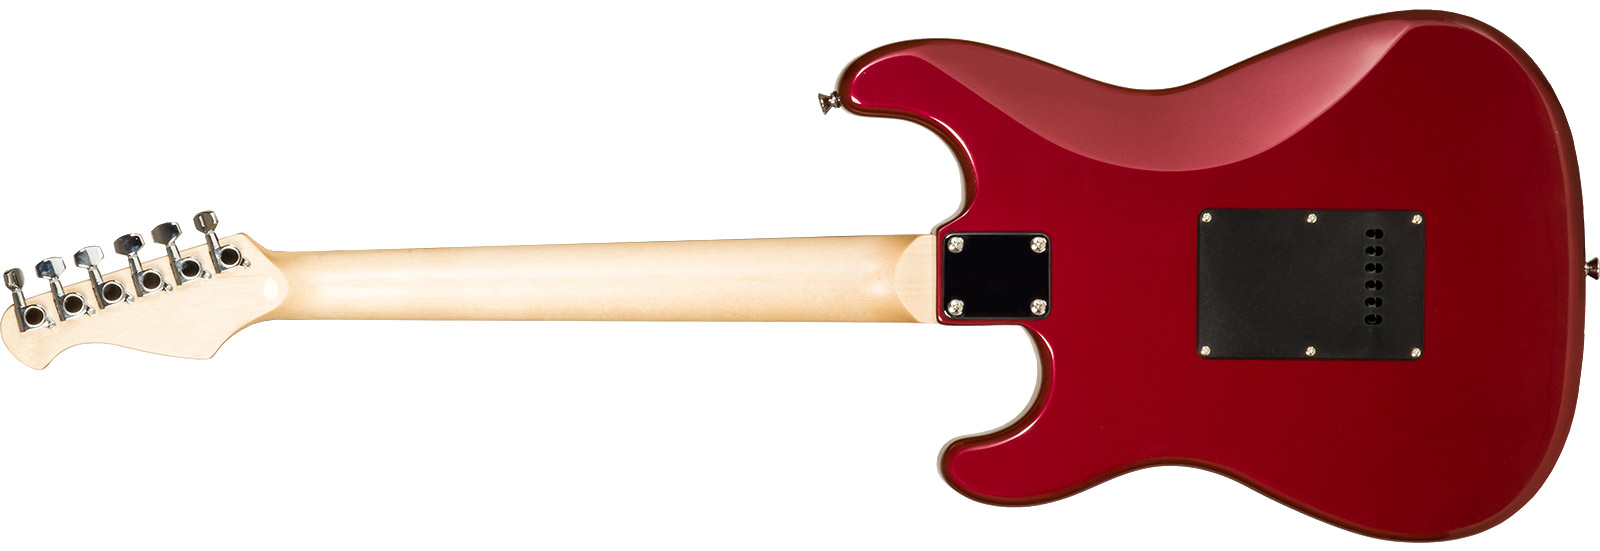 Eastone Str70t 3s Trem Pur - Dark Red - Elektrische gitaar in Str-vorm - Variation 6